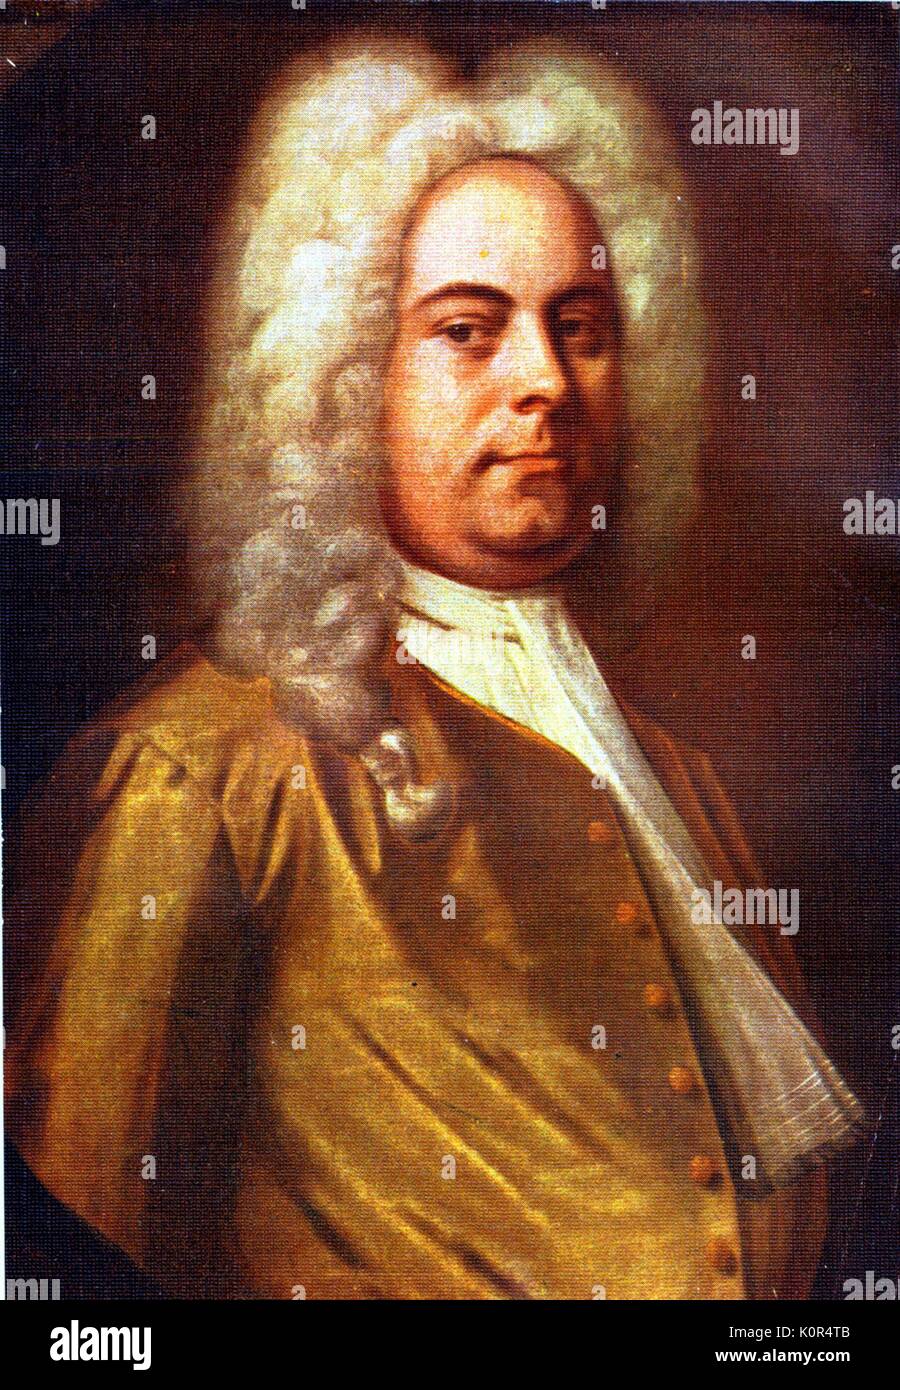 Georg Friedrich Händel, Porträt nach einem Gemälde von Balthasar Denner. Deutsch-englischer Komponist, 23. Februar 1685 - 14. April 1759. Stockfoto